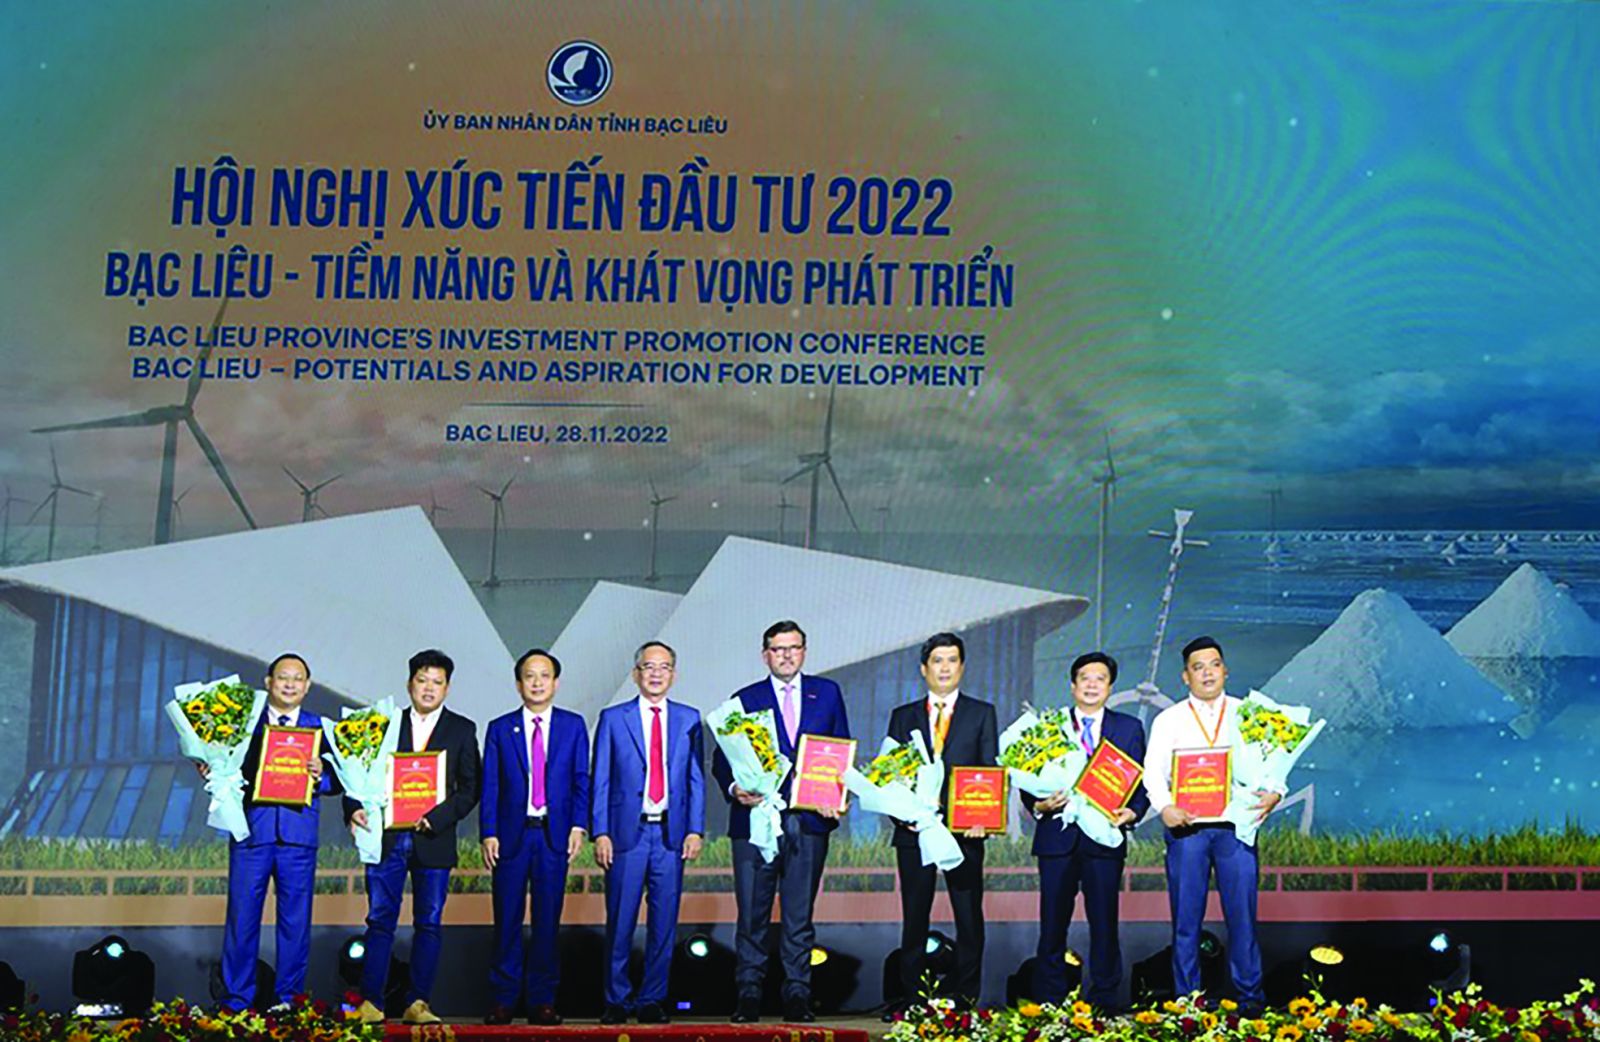  Lãnh đạo tỉnh Bạc Liêu trao giấy chứng nhận đăng ký cho các nhà đầu tư.